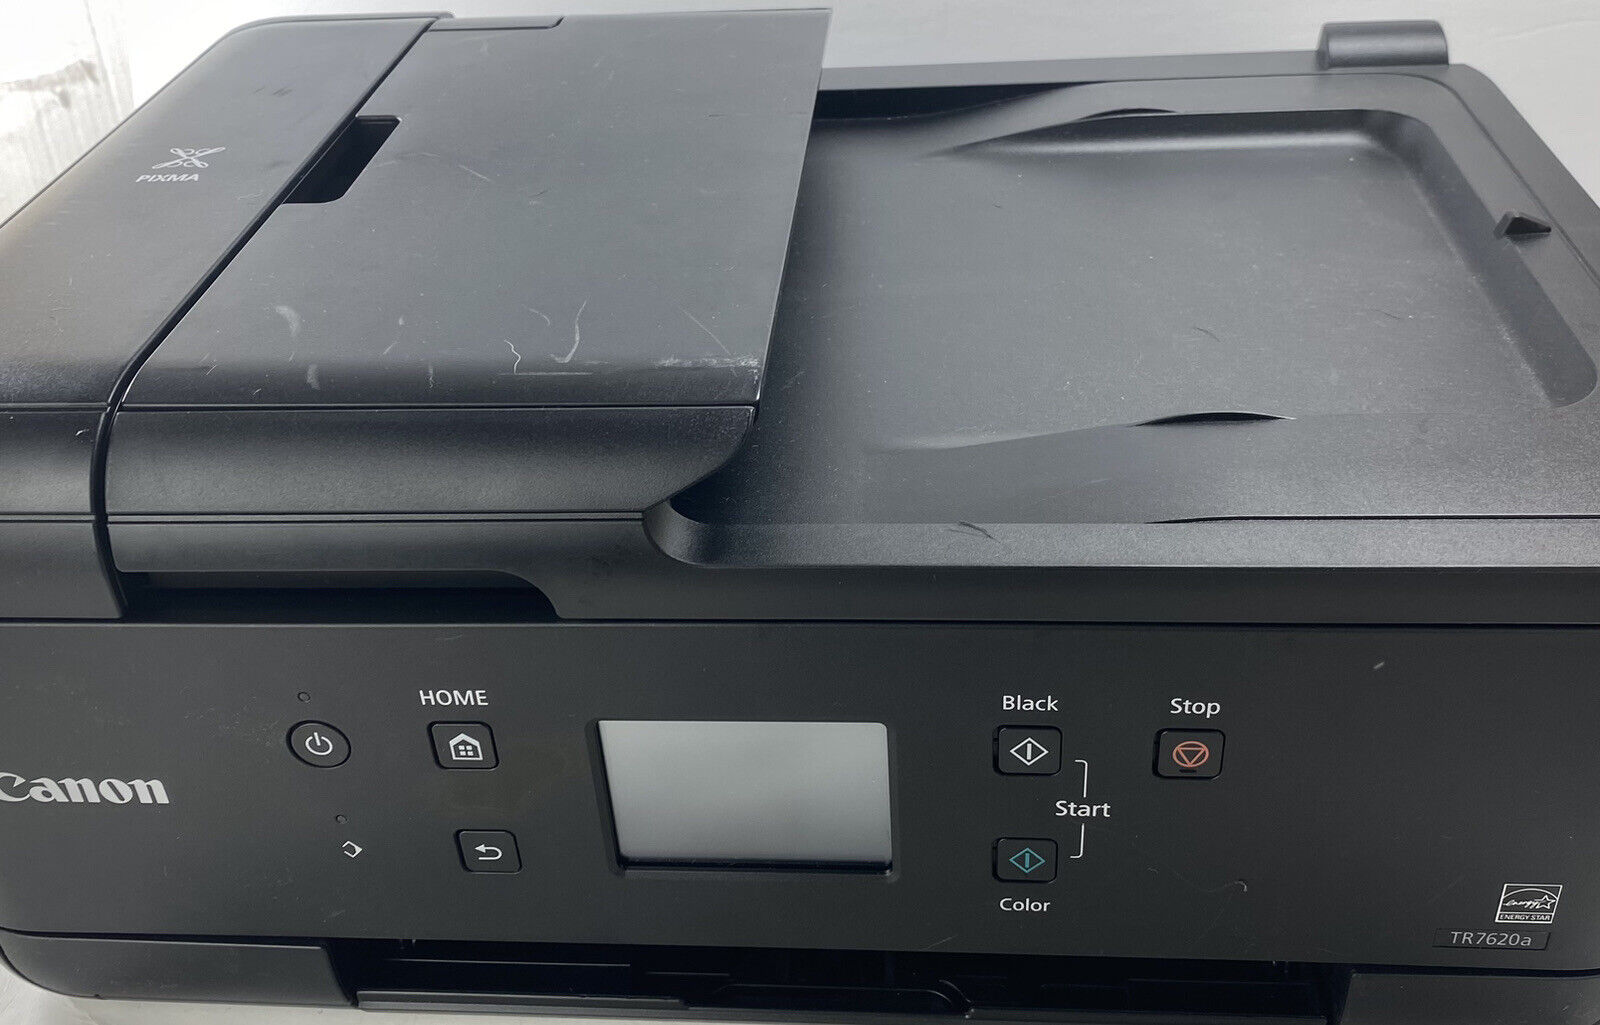 Canon Pixma  TR7620a All In One Printer Fax Scan Copier